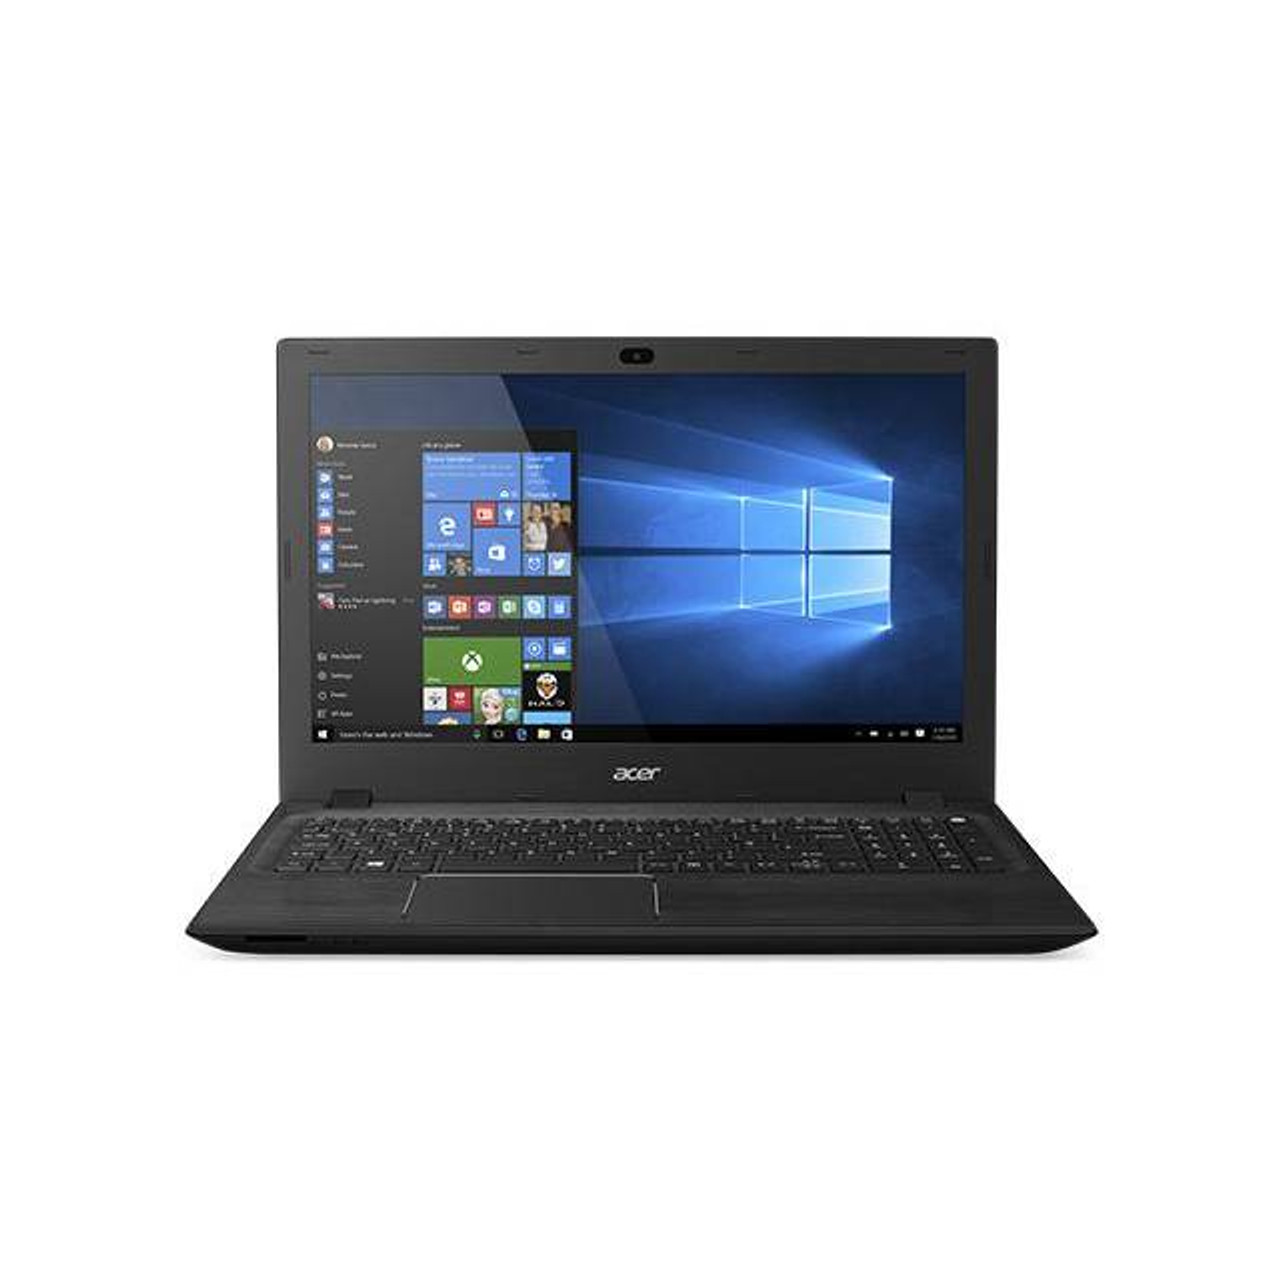 Acer Aspire F F5-571T-783Z 15.6 inch Touchscreen Intel Core i7-4510U 2.0GHz/ 8GB DDR3L/ 1TB HDD/ DVD±RW/ USB3.0/ Windows 10 Home Notebook (Black)